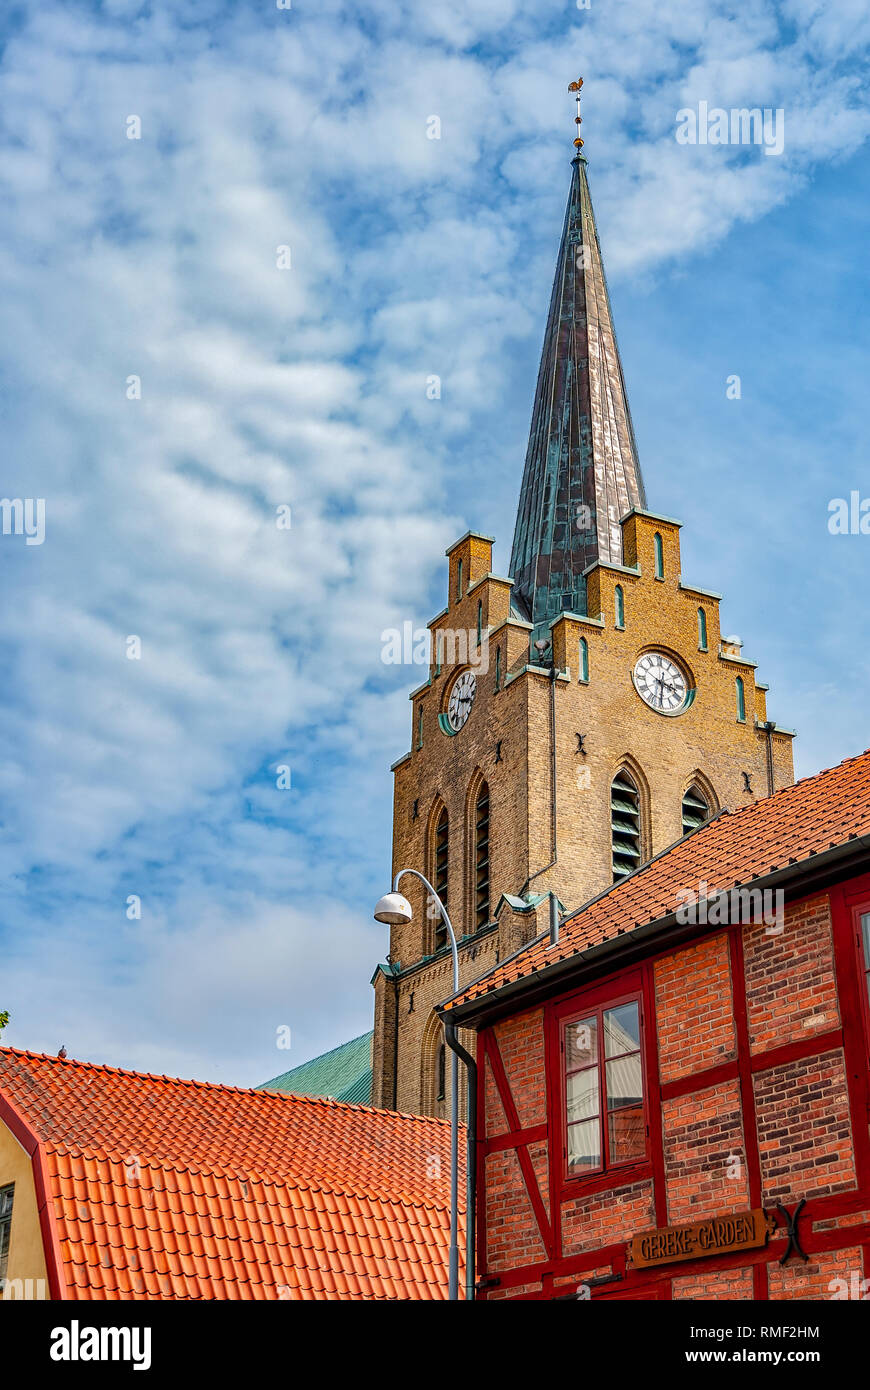 Halmstads Saint Nicholas church in the Halland region of Sweden. Stock Photo